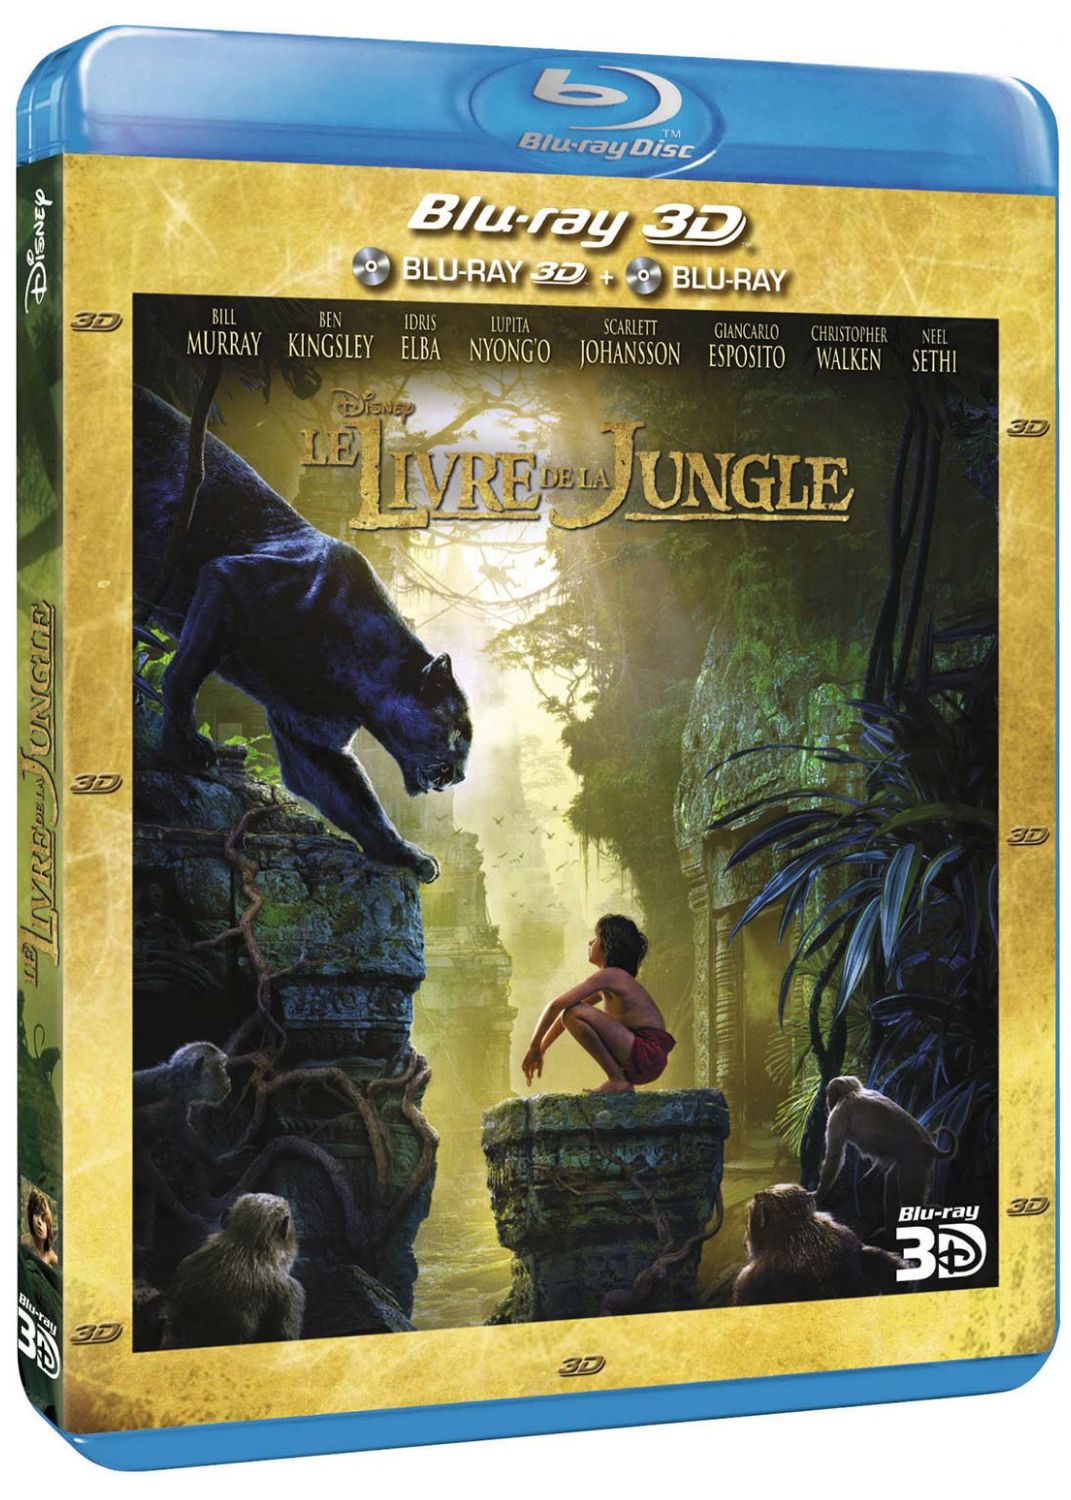 Le livre de la jungle (film) [Blu-ray 3D à la location]